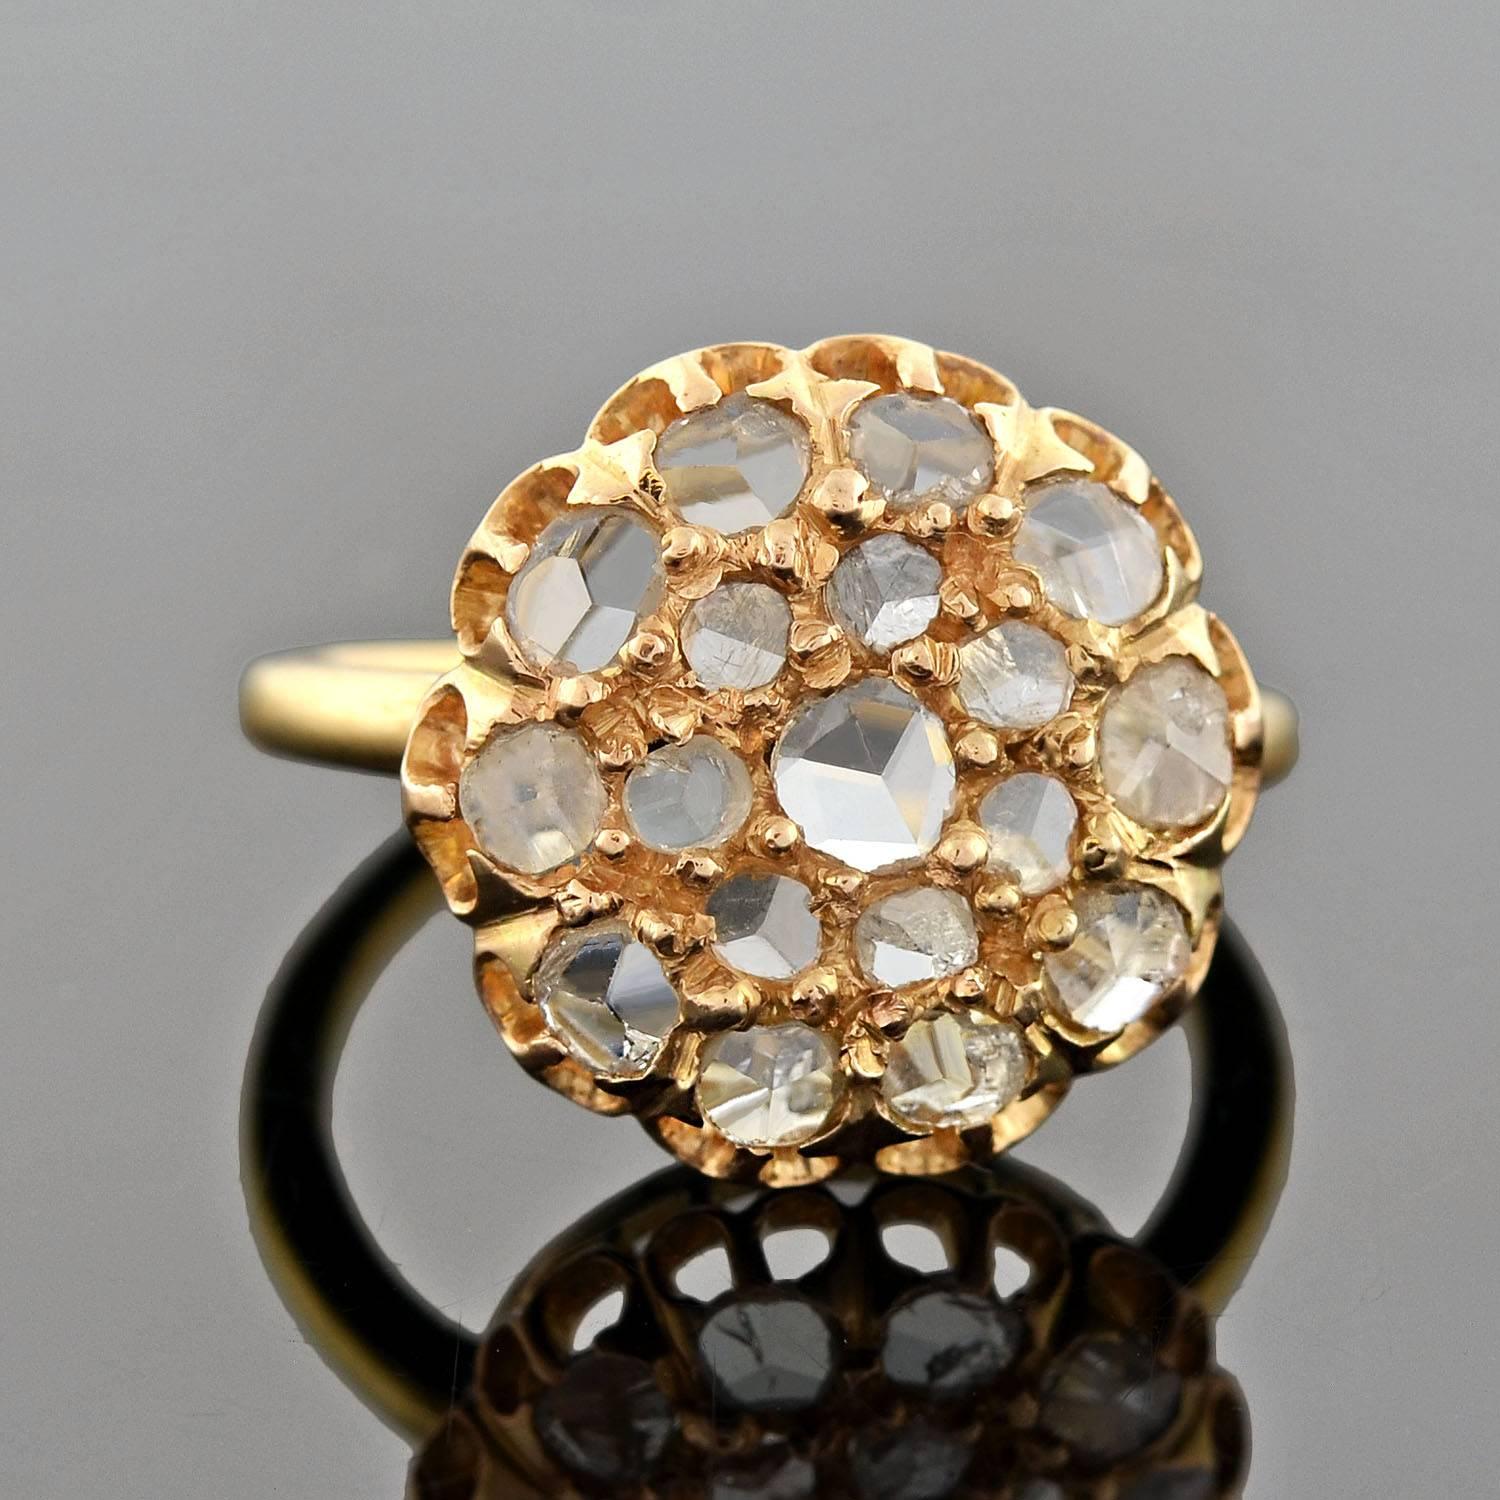 Ein spektakulärer Diamantring mit Rosenschliff aus der spätviktorianischen Ära (ca. 1900)! Dieser unglaubliche Ring ist mit einem wunderschönen Cluster aus funkelnden alten Rose-Cut-Diamanten in einer kreisförmigen Fassung aus 18kt Gold